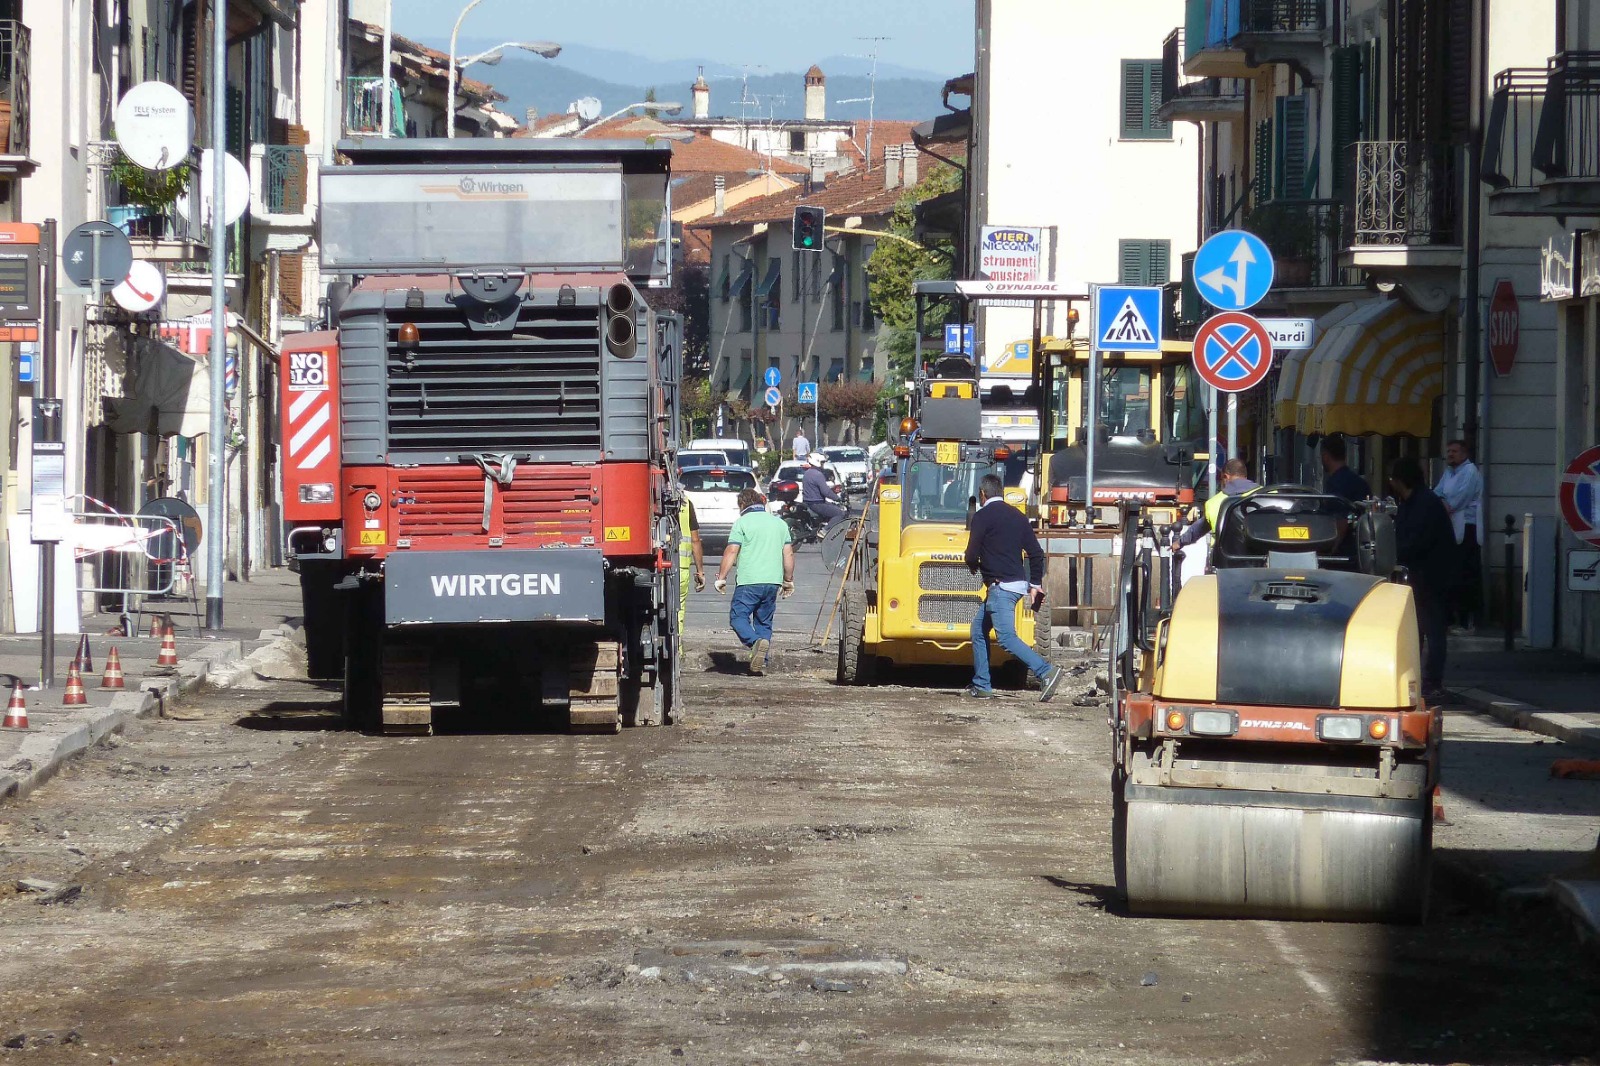 Proseguono i lavori di asfaltatura nel centro cittadino. Gli orari e le modifiche alla circolazione fino a venerdì